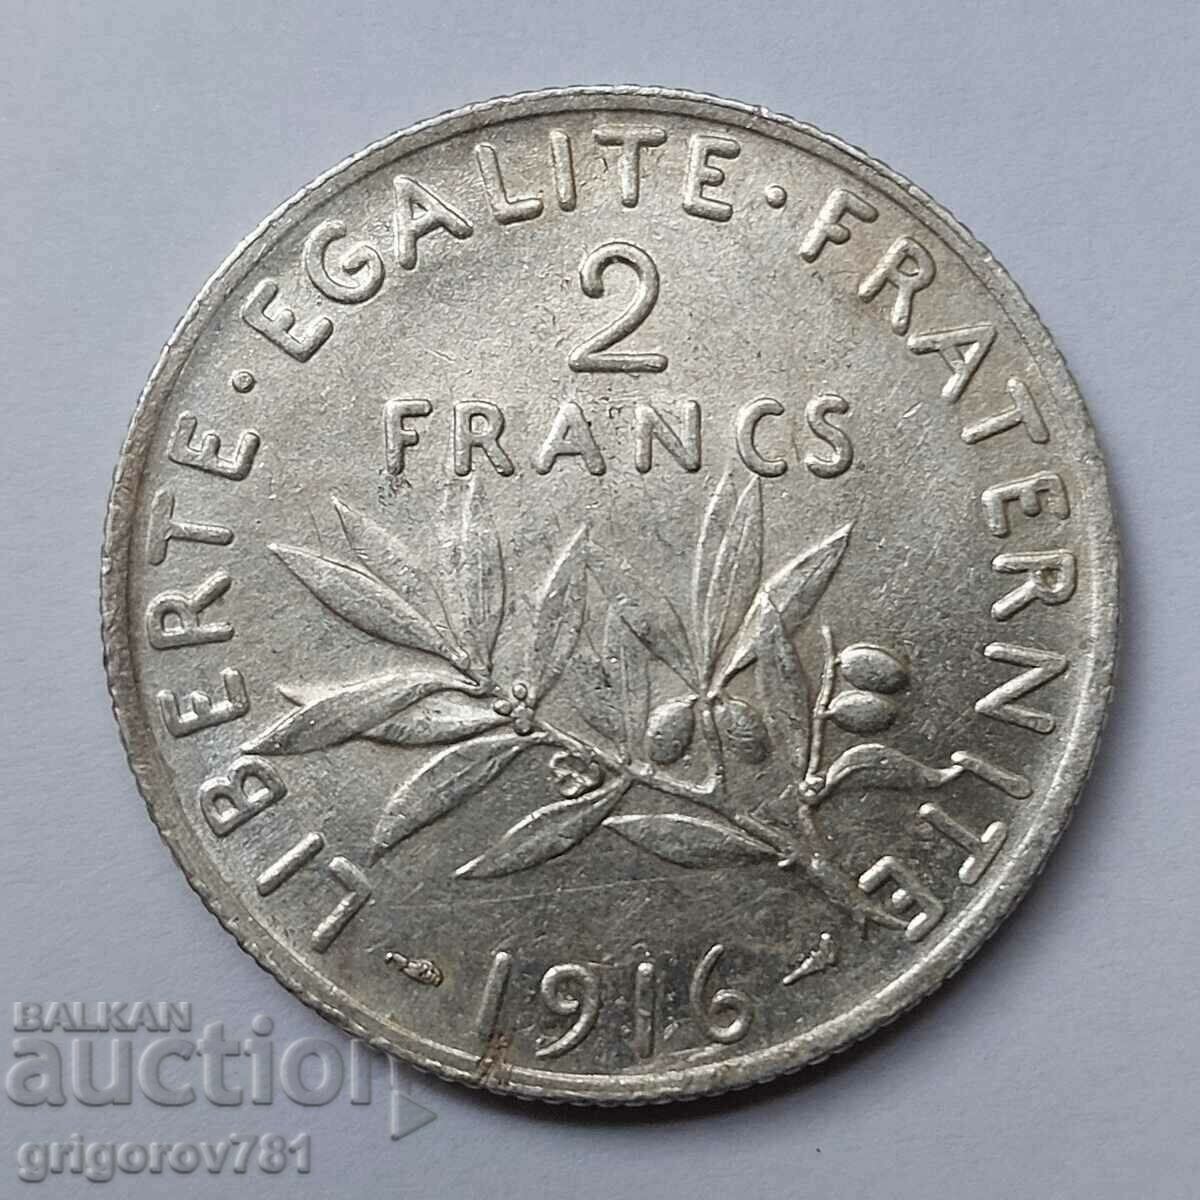 2 Franci Argint Franta 1916 - Moneda de argint #7